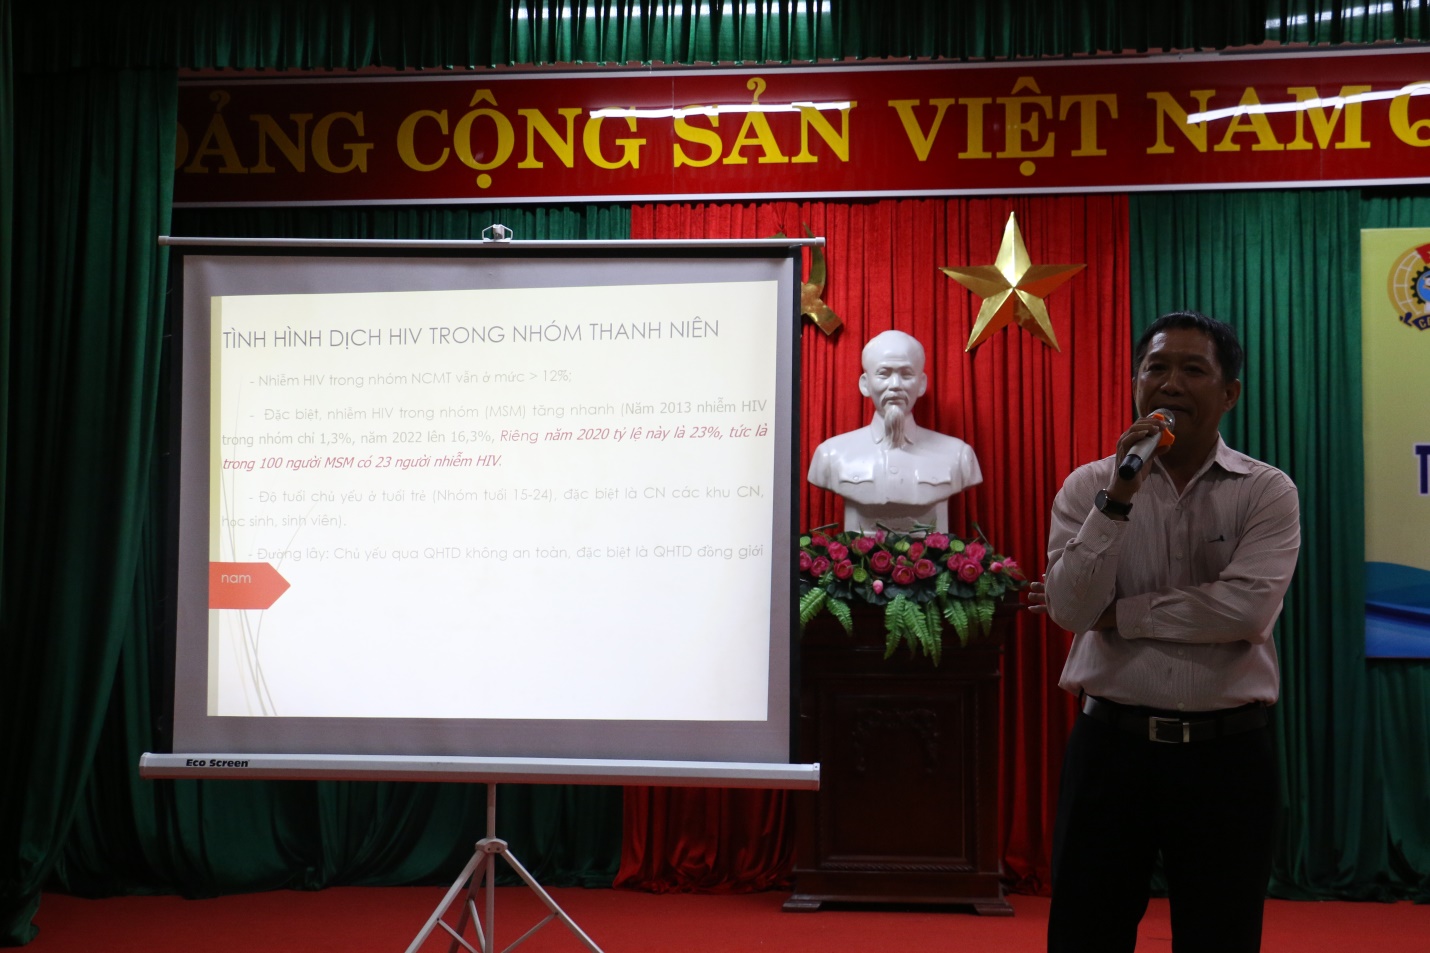 Sức khỏe - Cảnh báo gia tăng lây nhiễm HIV trong nhóm đồng giới nam ở Đà Nẵng